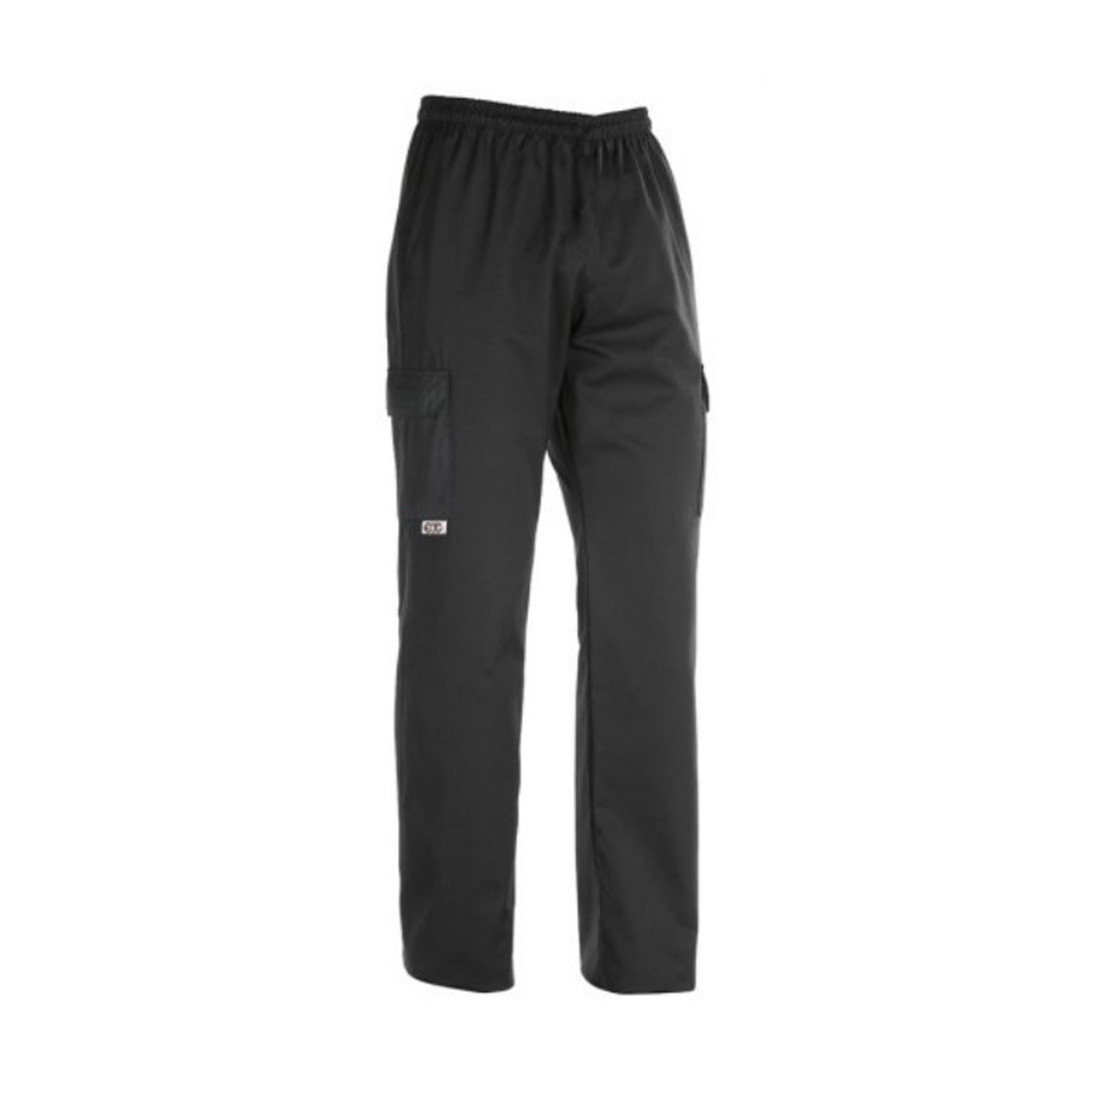 Pantalon Coulisse Leg Pocket, 65% poliéster/35% algodón - Les vêtements de protection